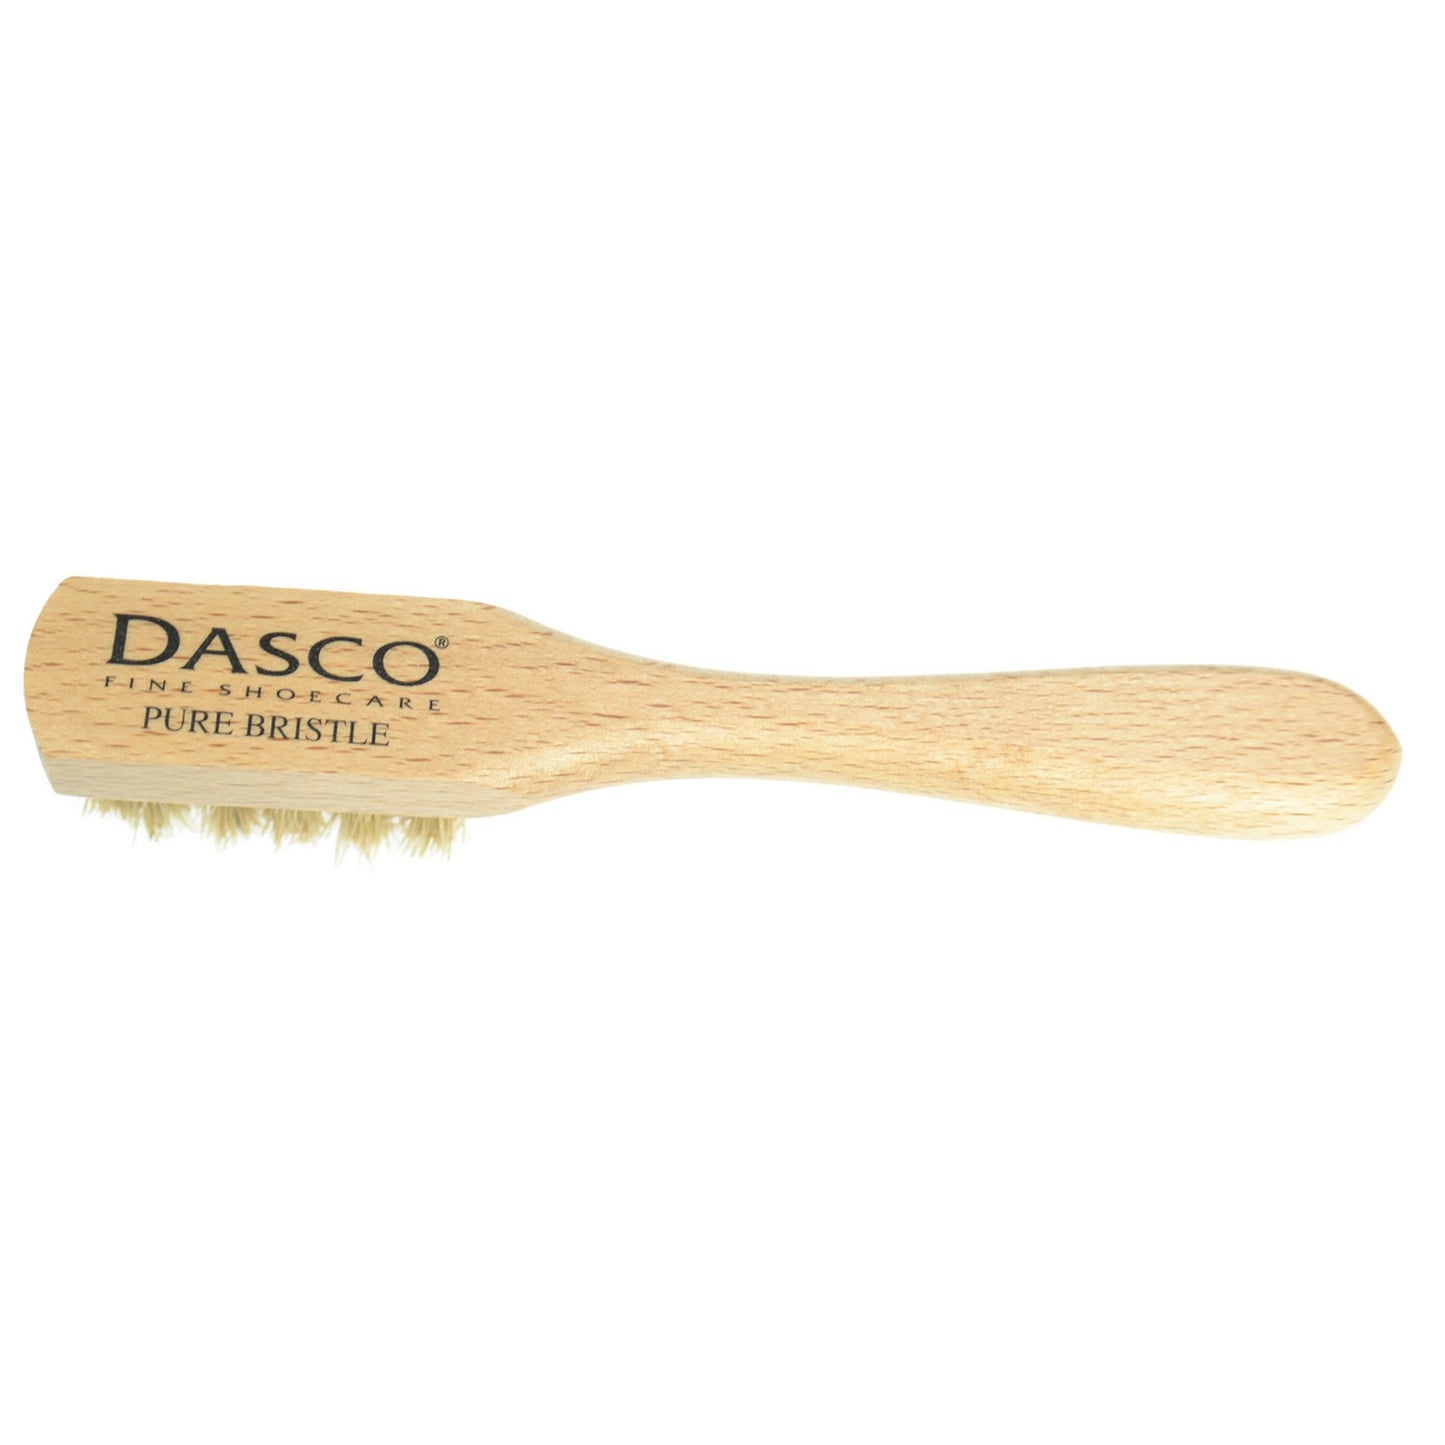 Dasco Polish Applicator brush - grey